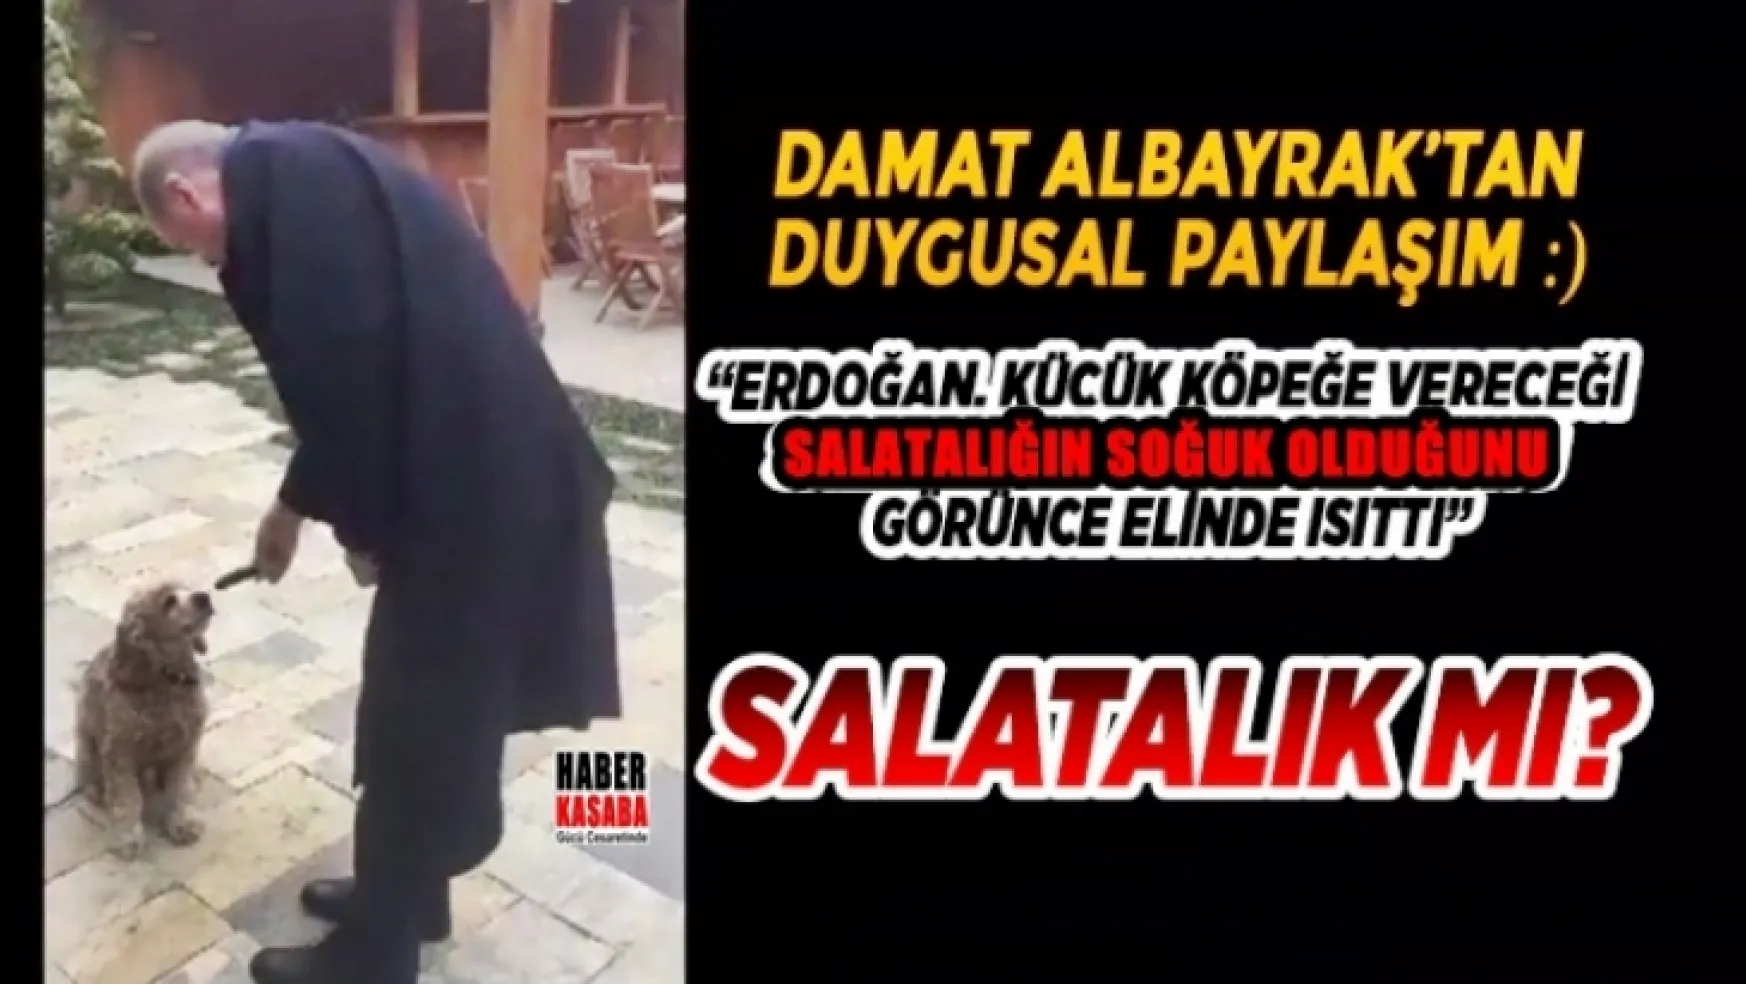 Damat Albayrak'dan duygusal bir paylaşım: Erdoğan, küçük köpeğe vereceği salatalığın soğuk olduğunu görünce elinde ısıttı'